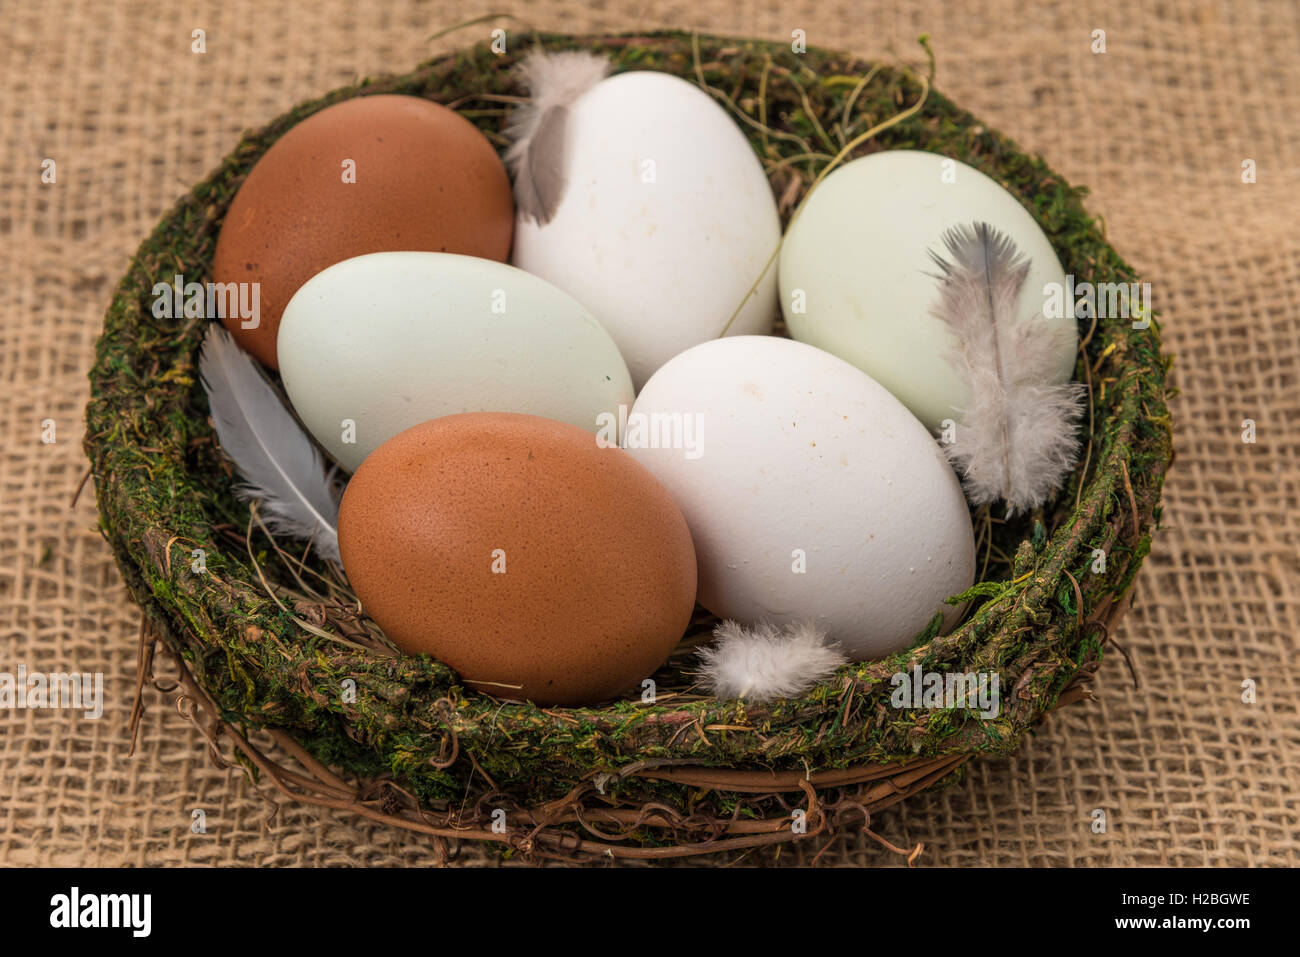 Eine Vielzahl von frischen Hühnereier in einem Korb.  Die Typen sind Maran Insel, Ameraucana blau und weißen Eiern. Stockfoto